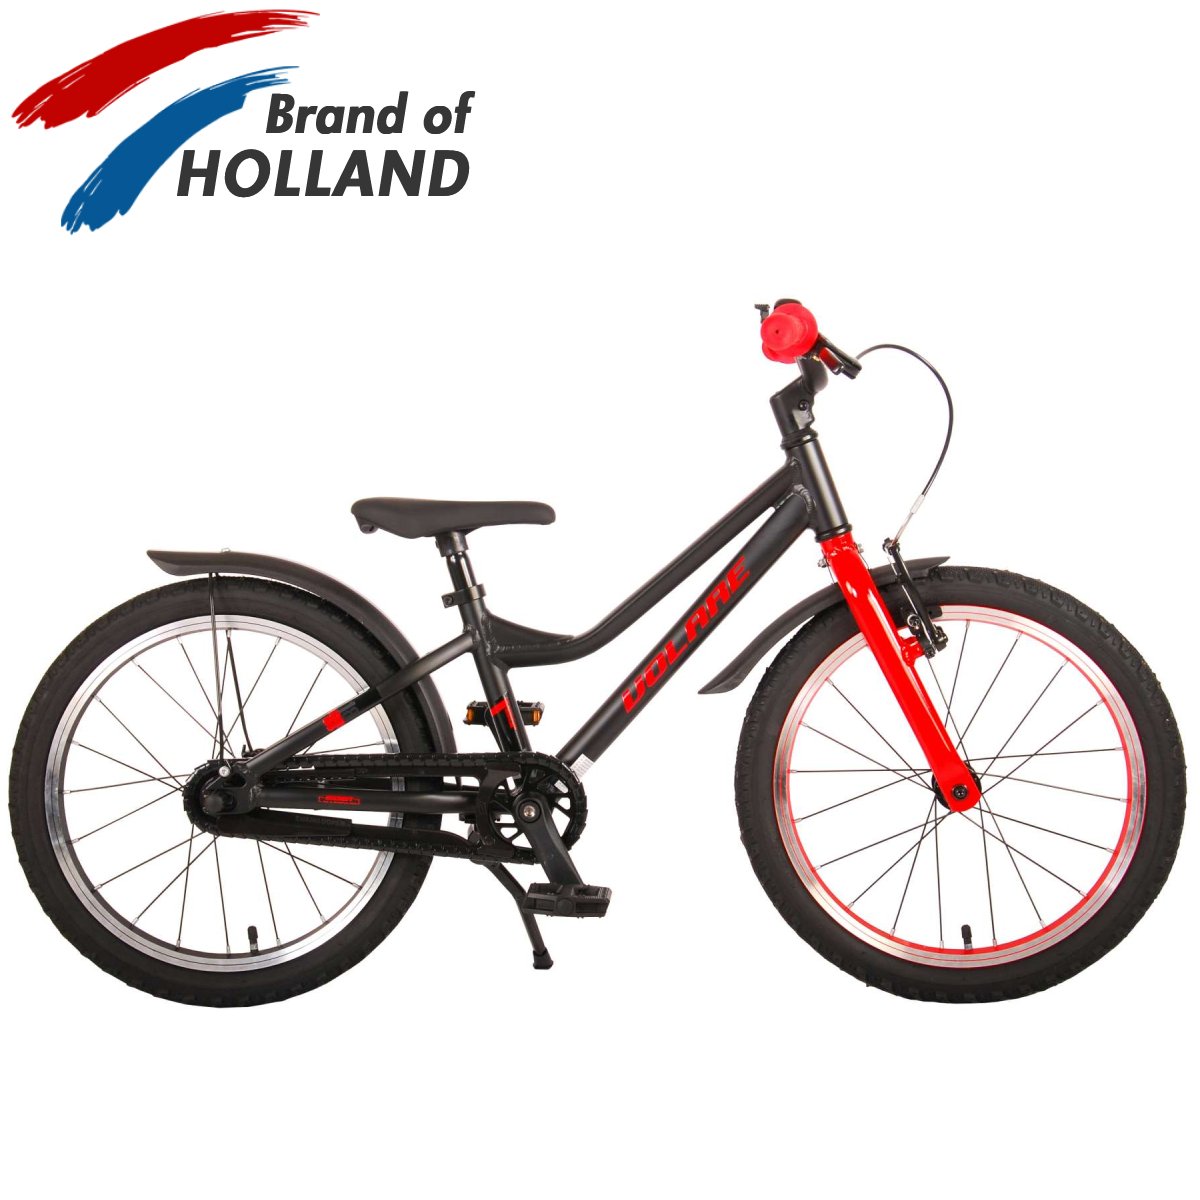 Vaikiškas dviratis VOLARE 18" Blaster (21870) juodas/raudonas - 1